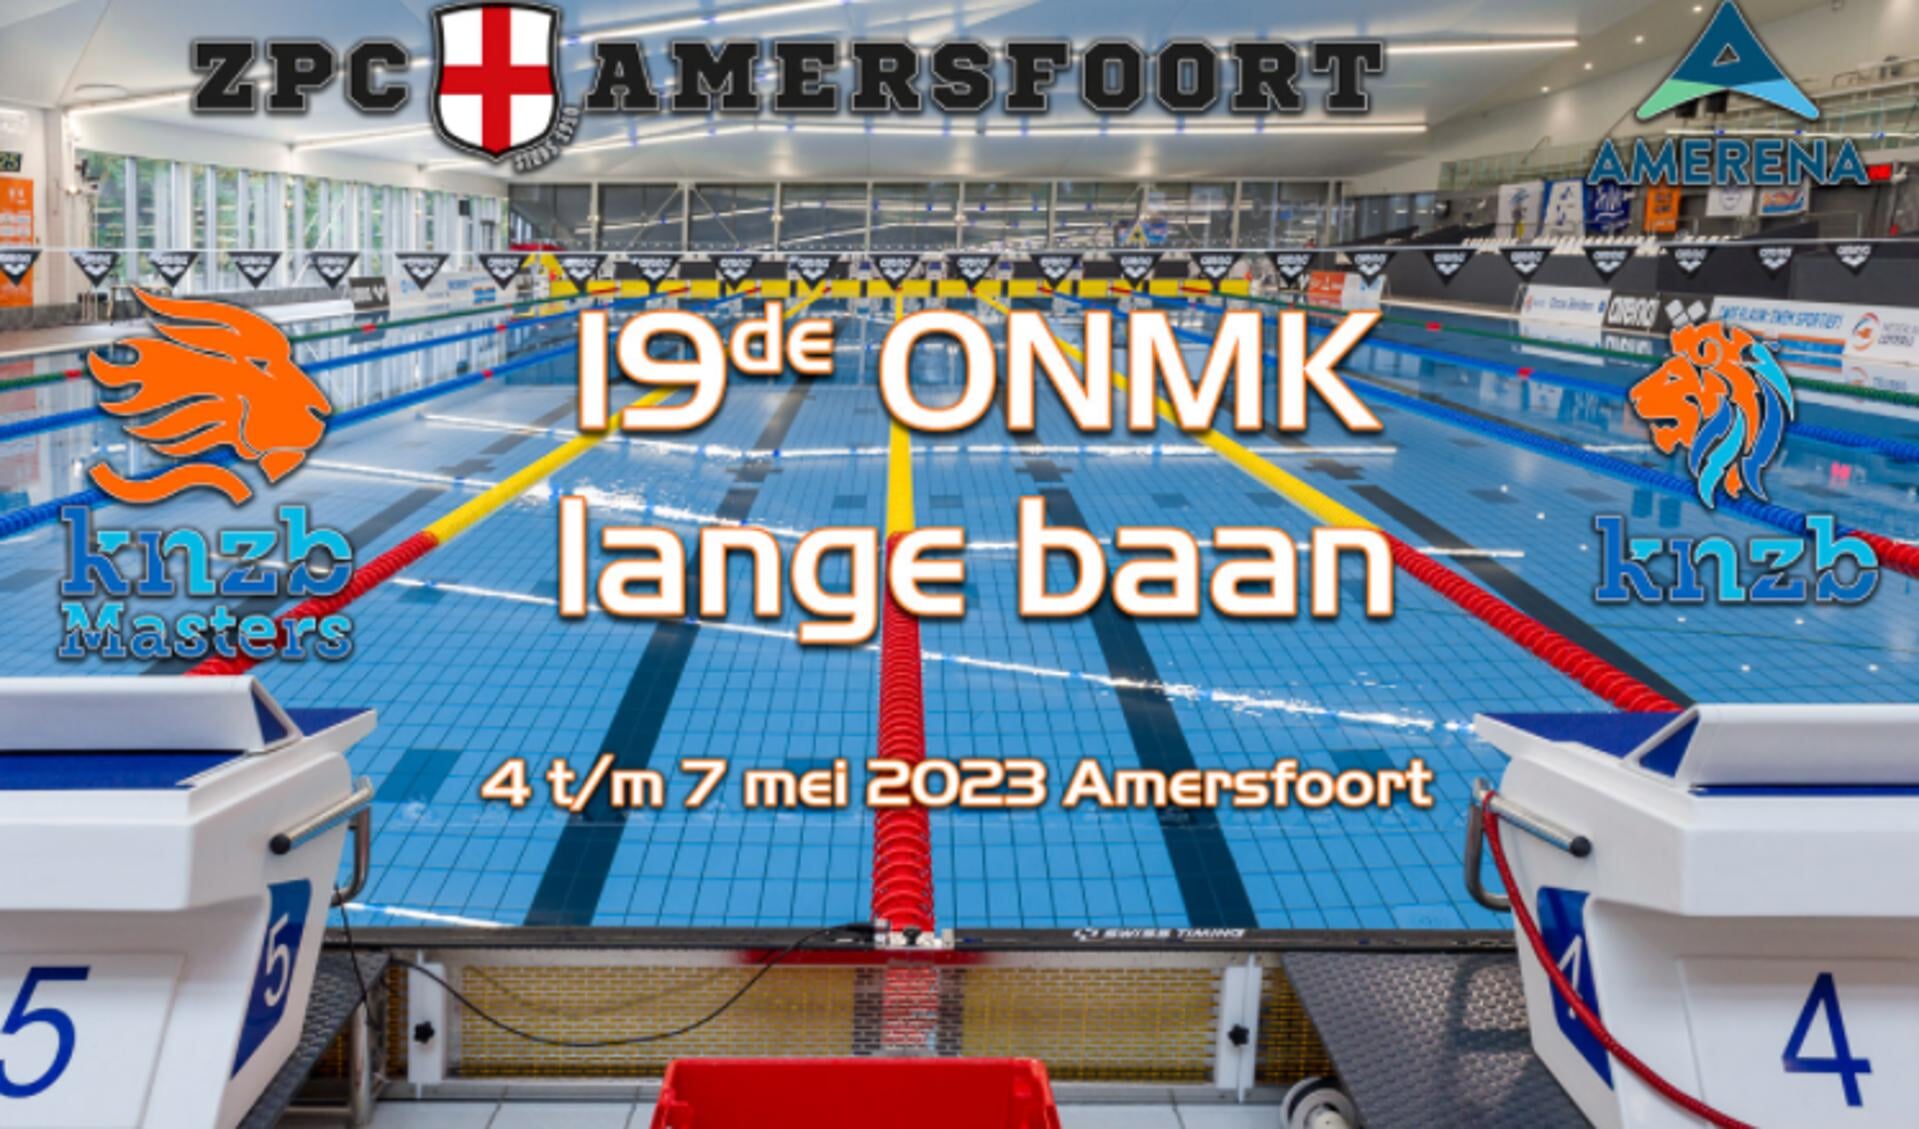 Dit evenement wordt georganiseerd door de KNZB Taakgroep Masters Zwemmen in samenwerking met ZPC Amersfoort.